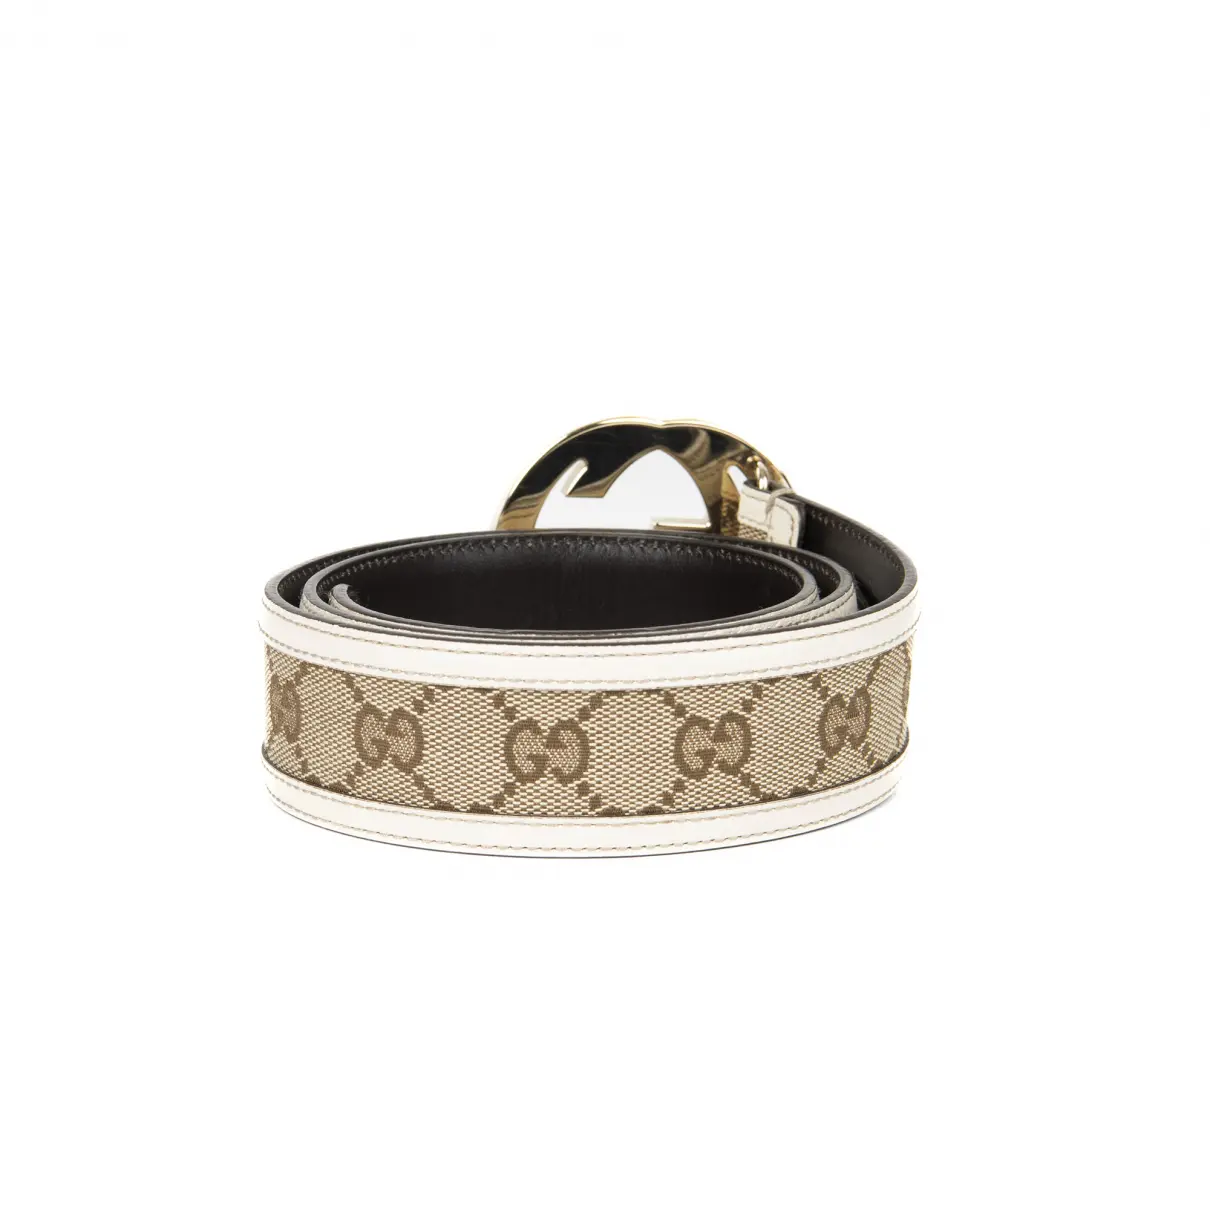 Buy Gucci Interlocking Buckle belt online